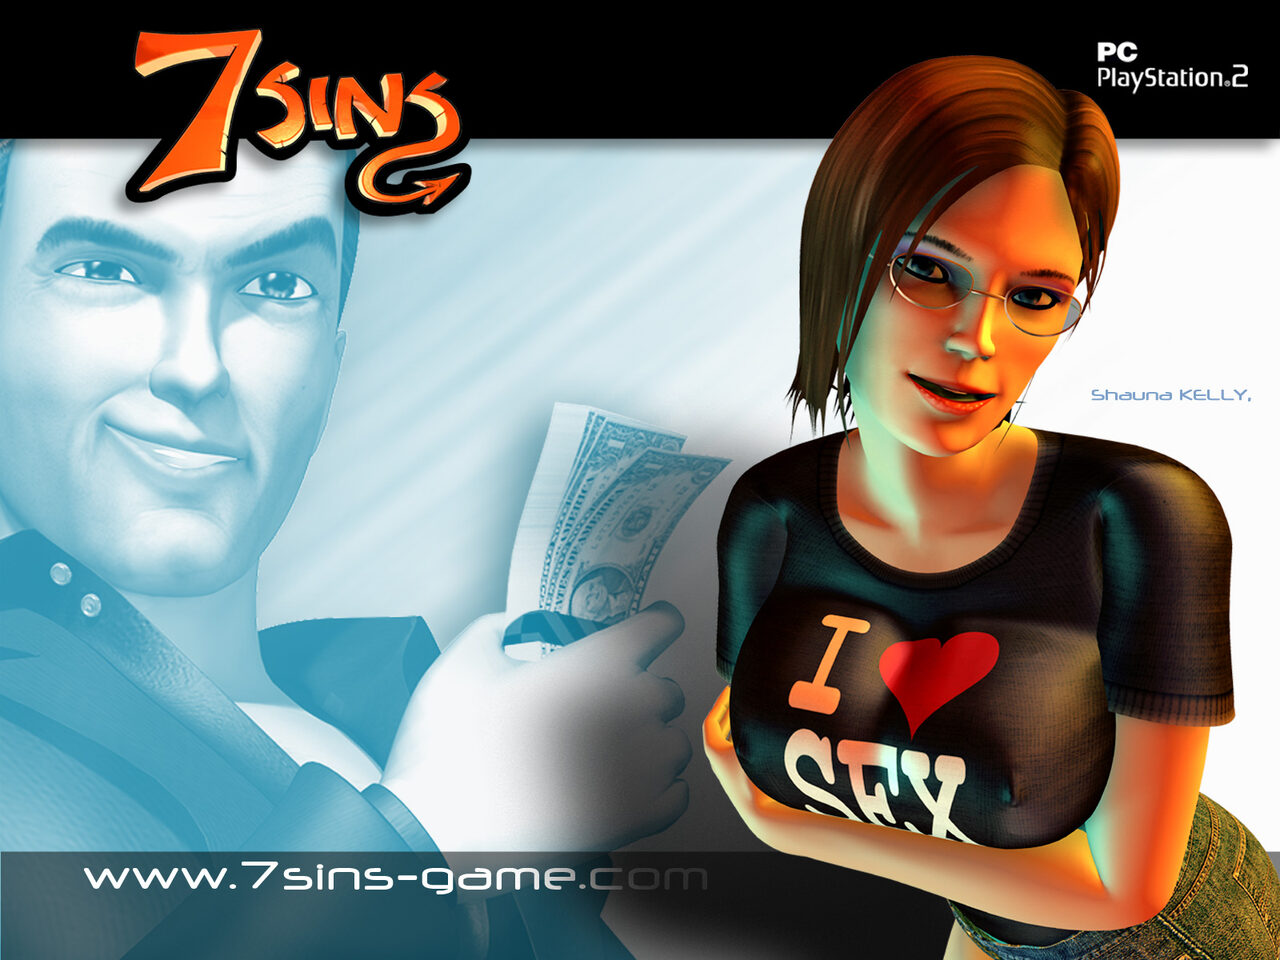 7 sins game buy